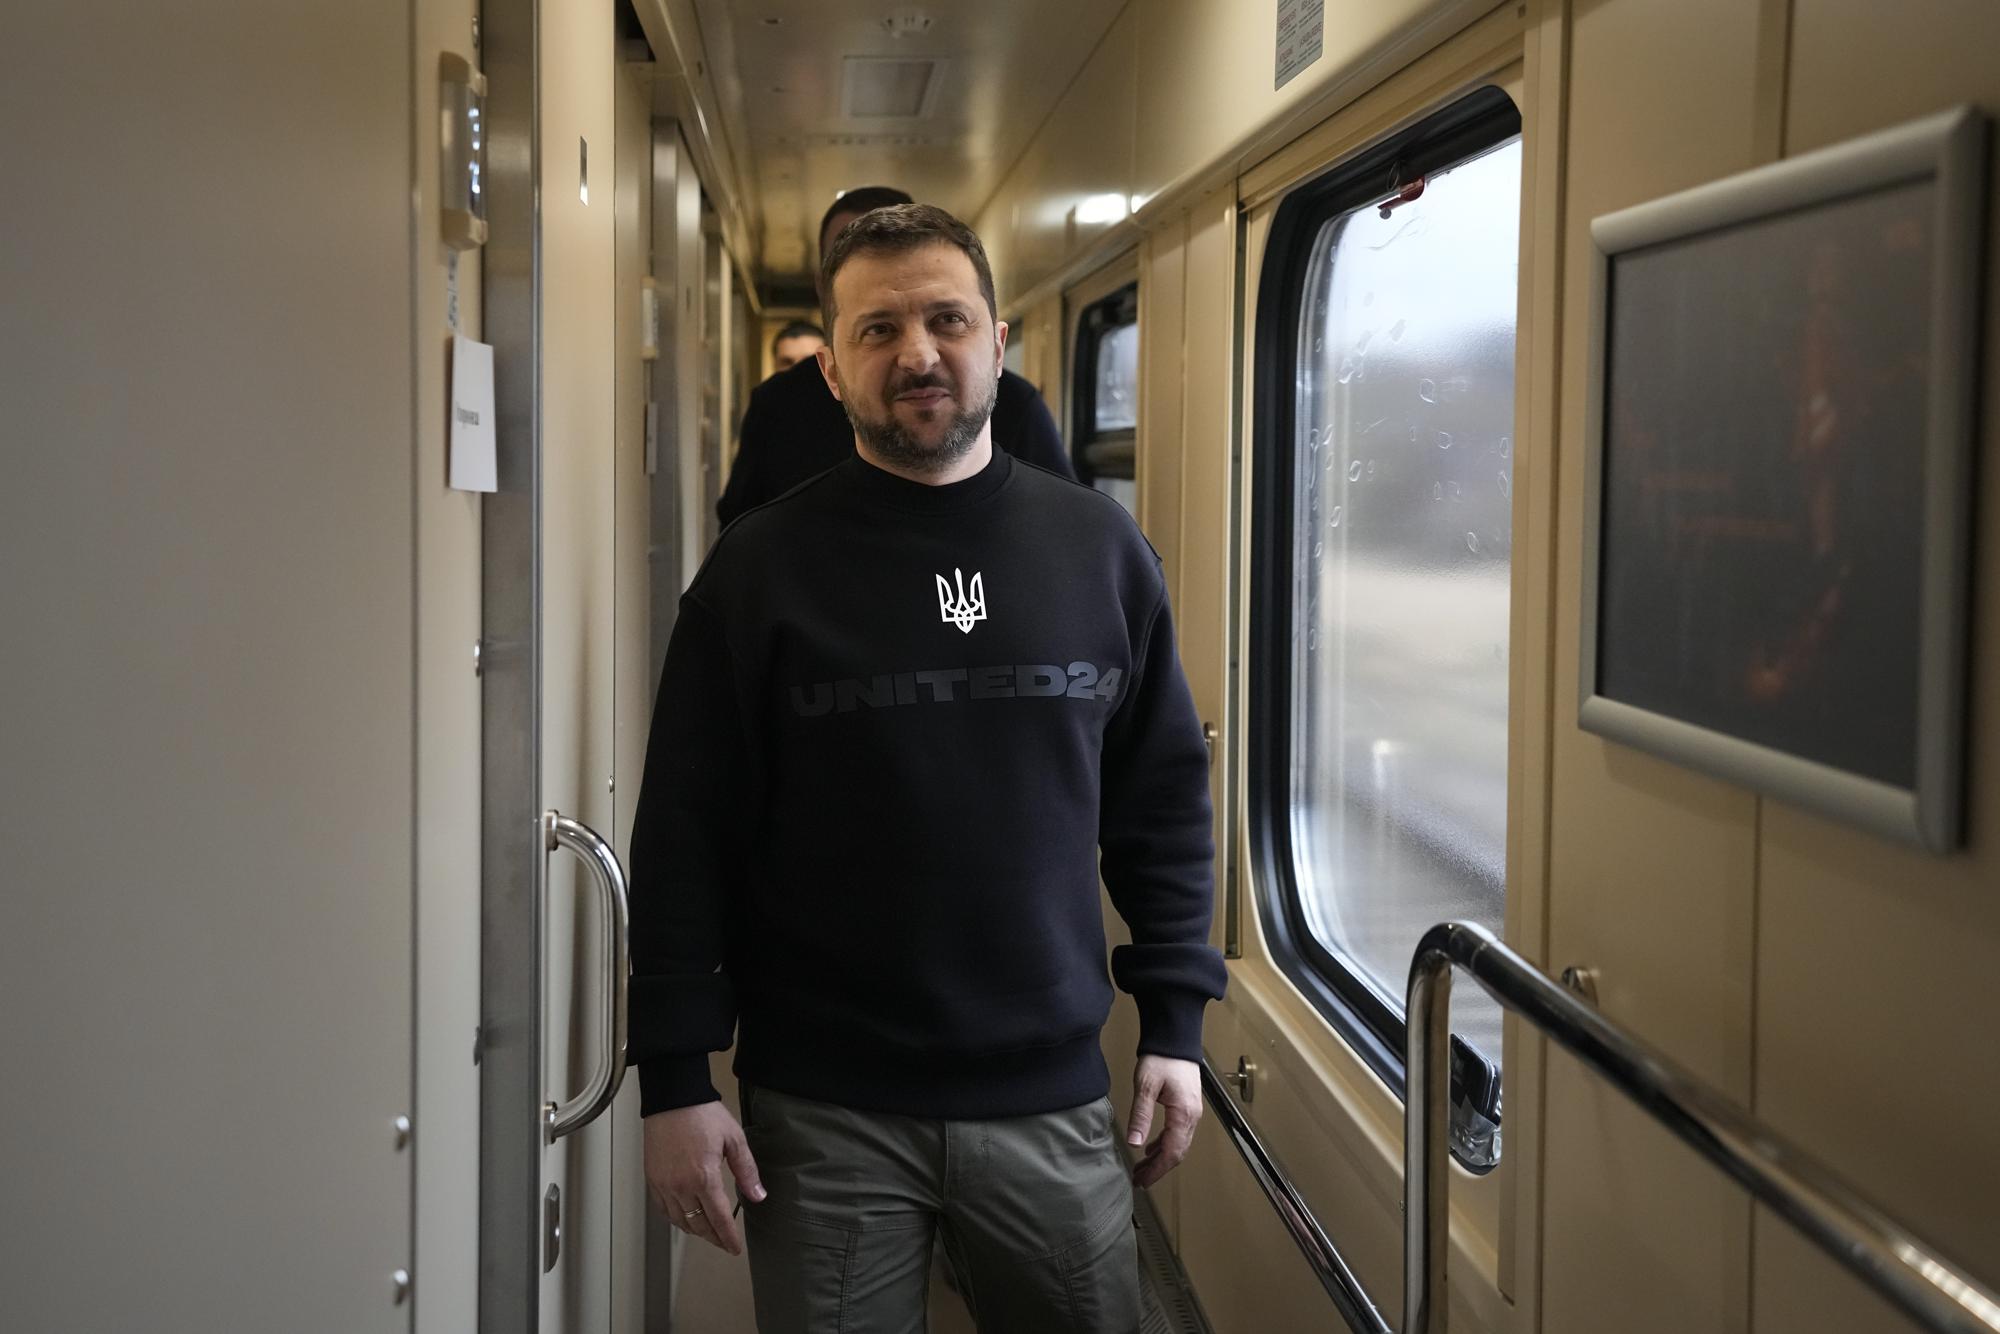 Đoàn xe không biển số và chuyến tàu bí mật đưa ông Zelensky tới khắp vùng chiến sự Ukraine - Ảnh 3.